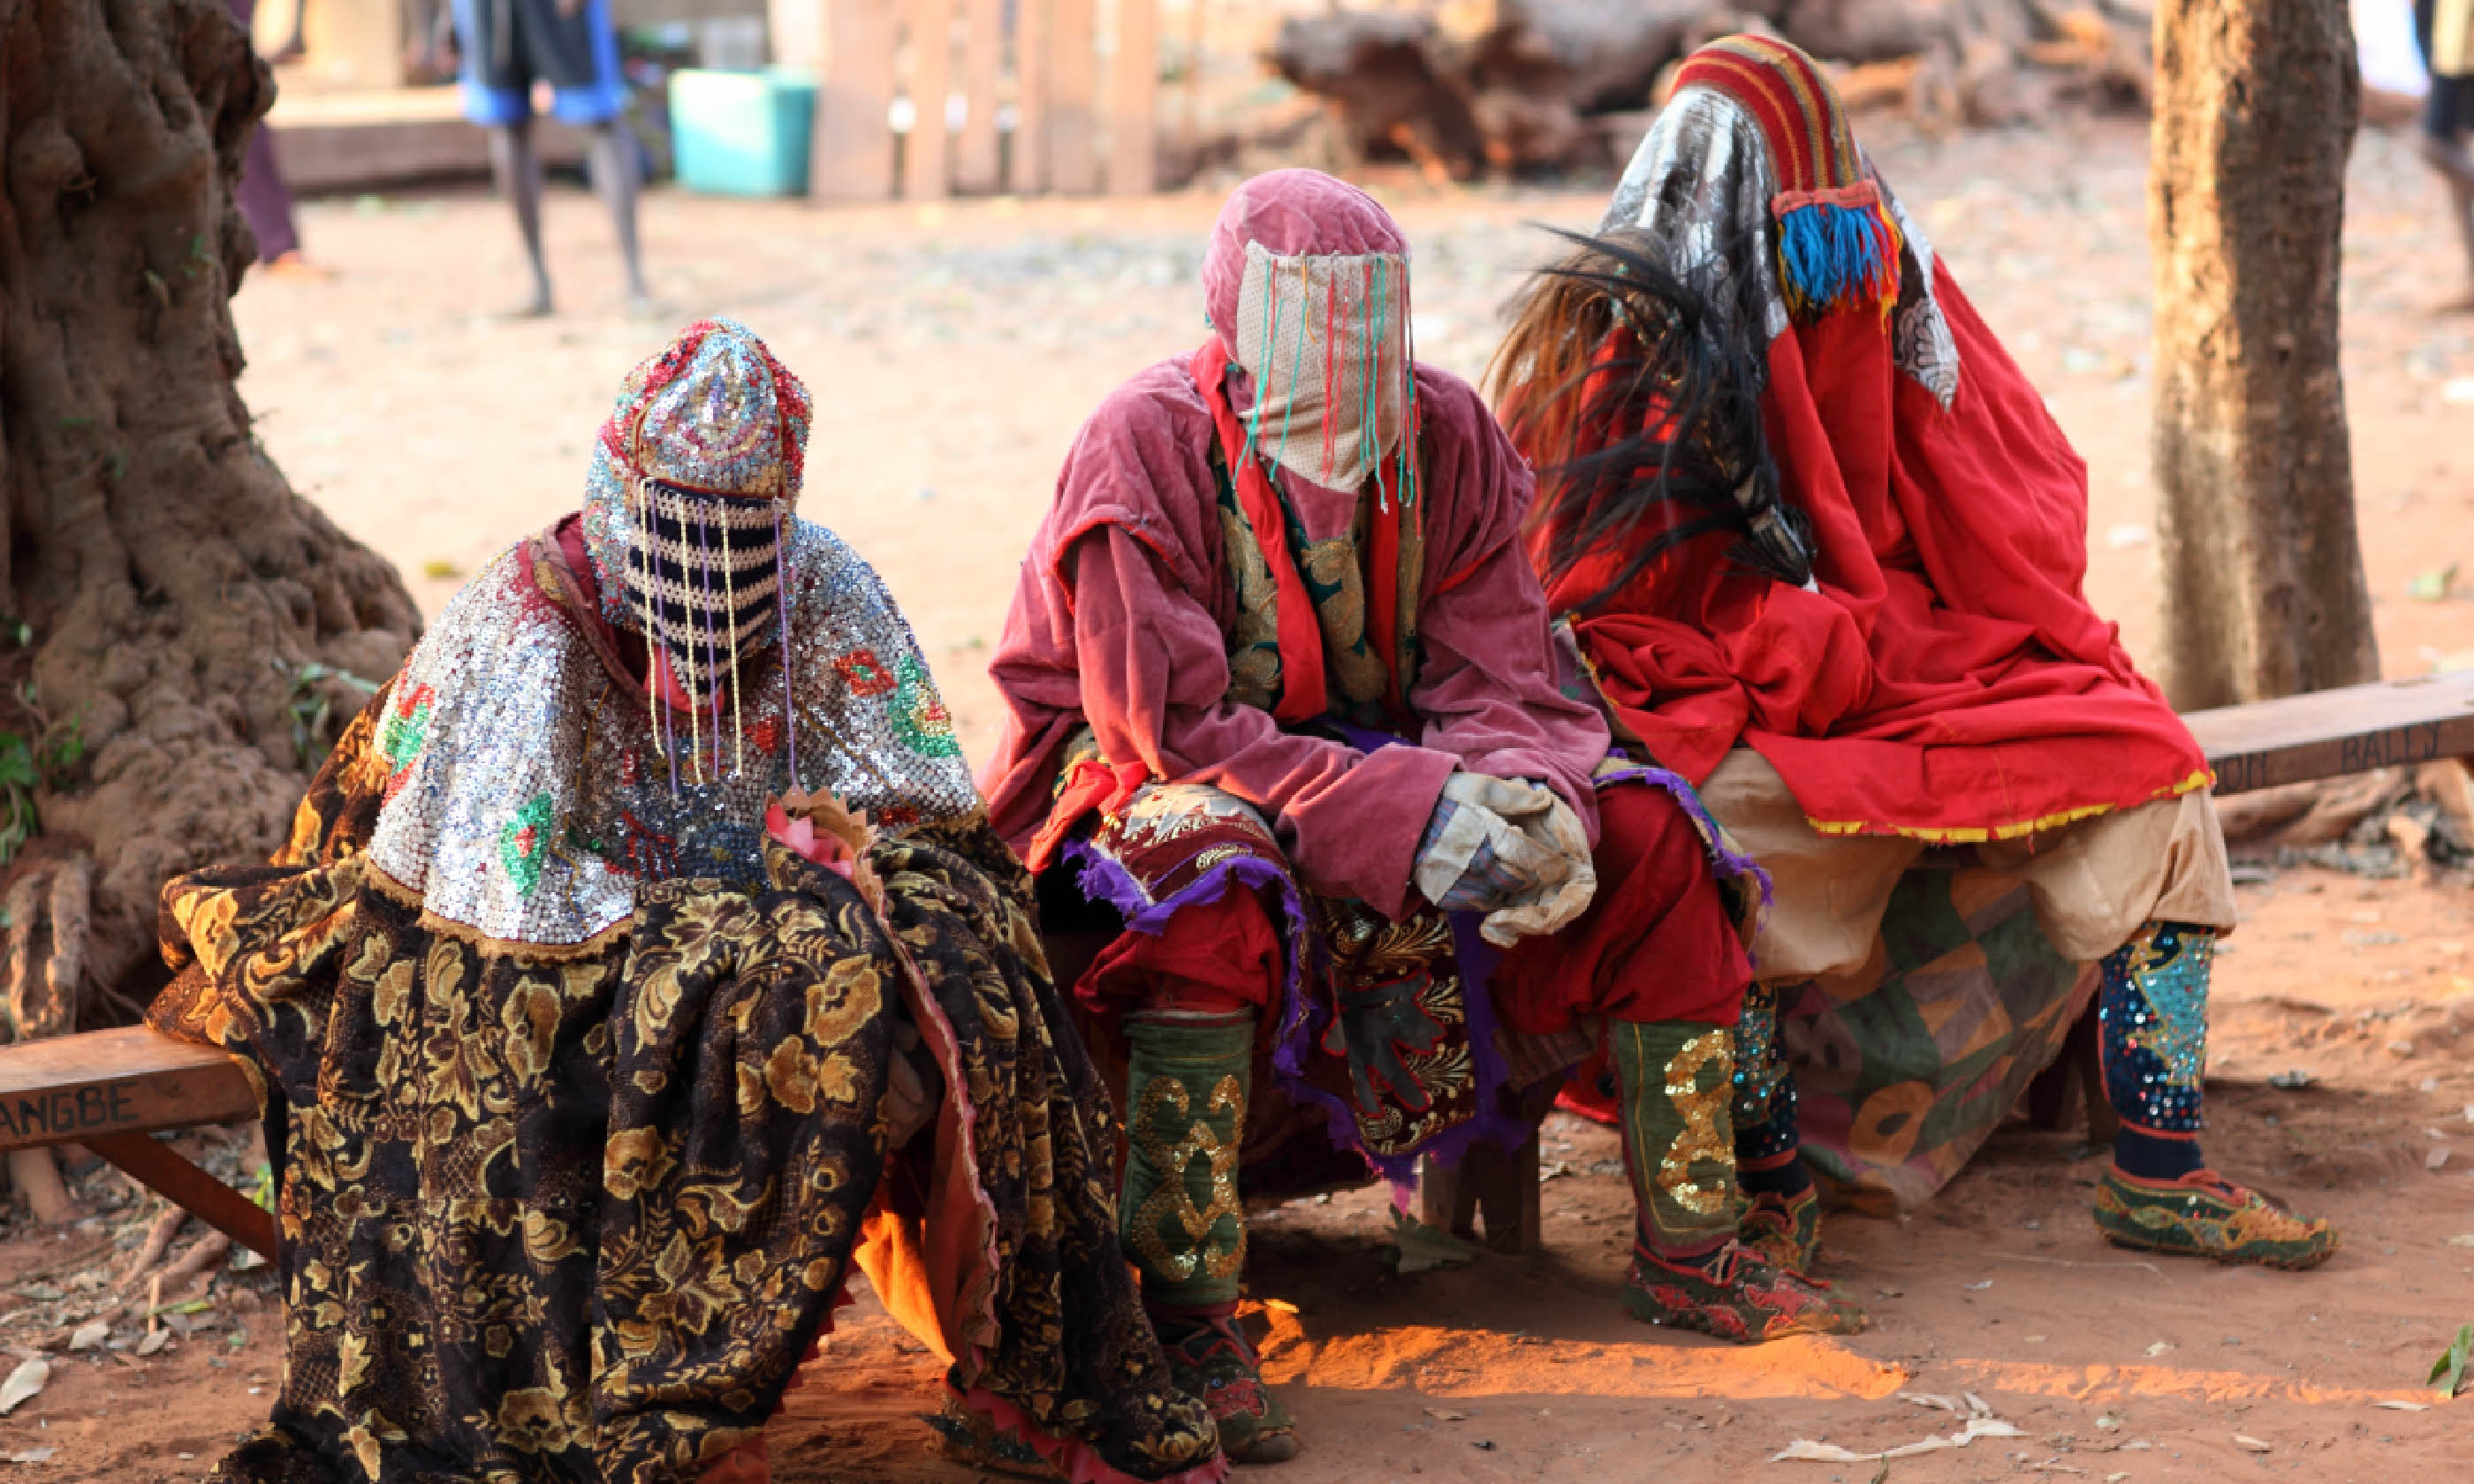 Voodoo in Benin (Shutterstock: see credit below)